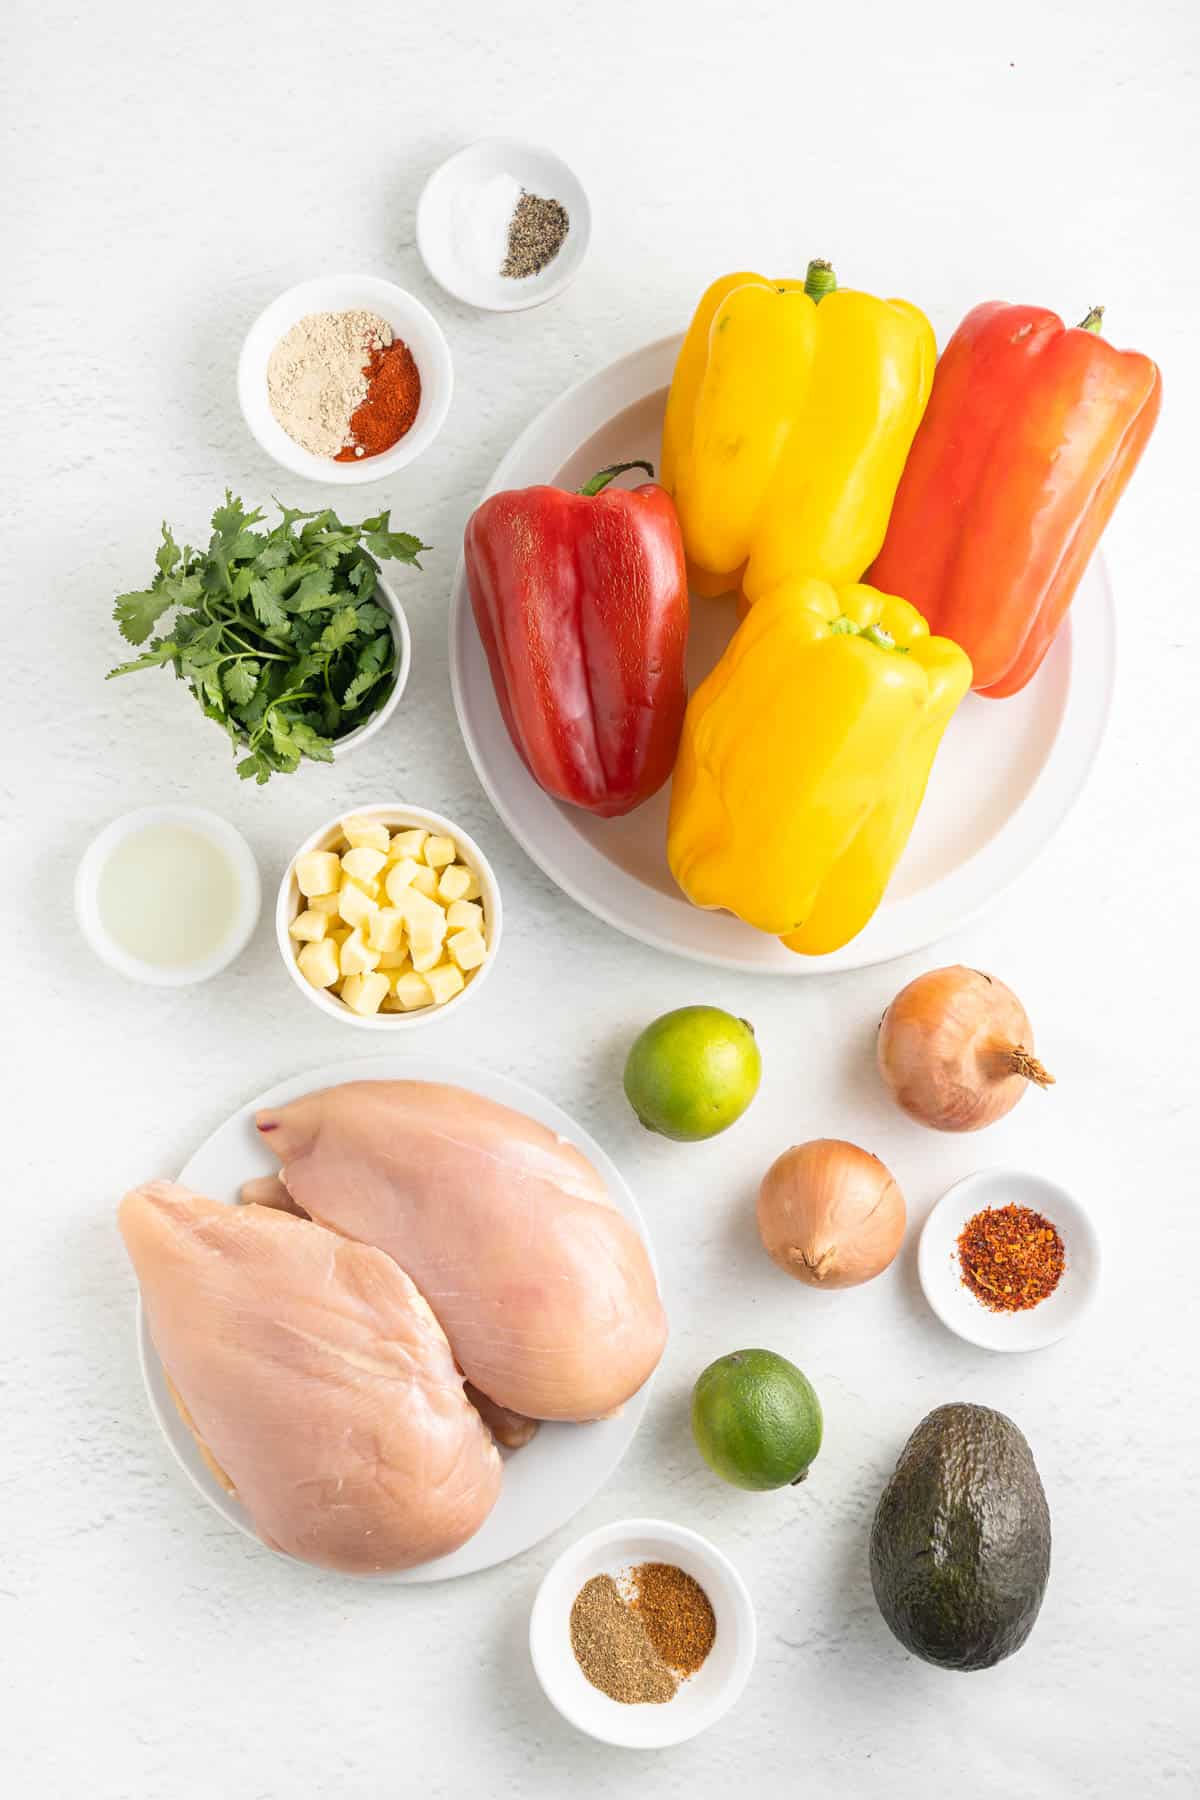 Ingredients for making fajita chicken stuffed peppers.